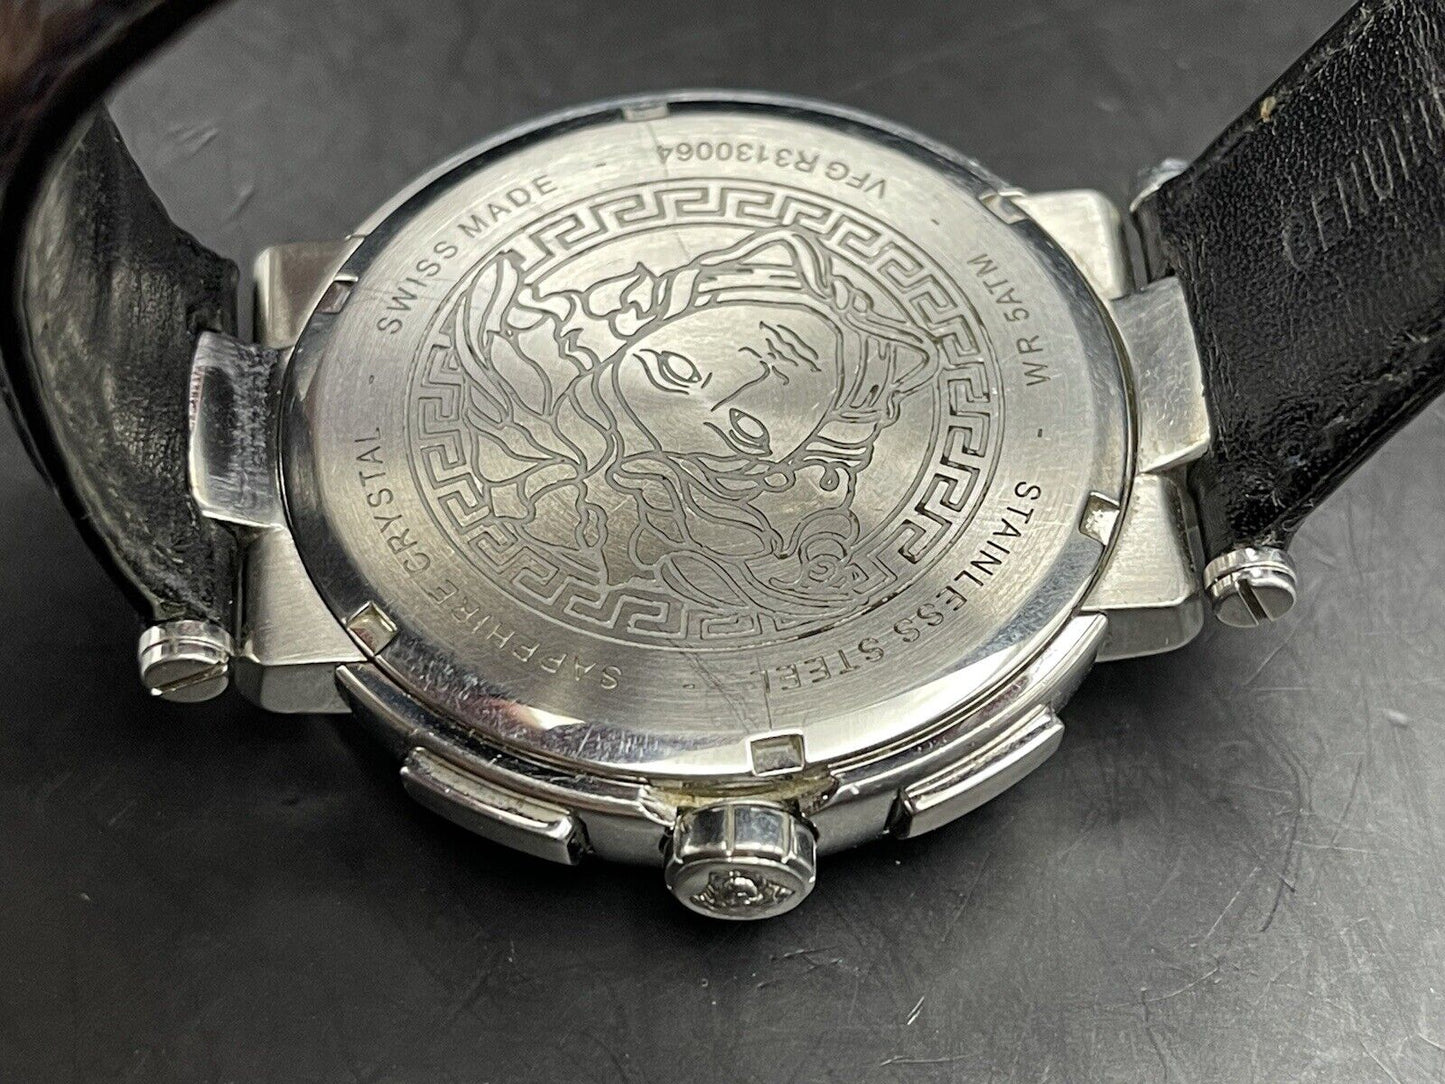 Beautiful Versace Chronograph Gents Watch, Quartz, Beautiful gift watch - Grab A Watch Co